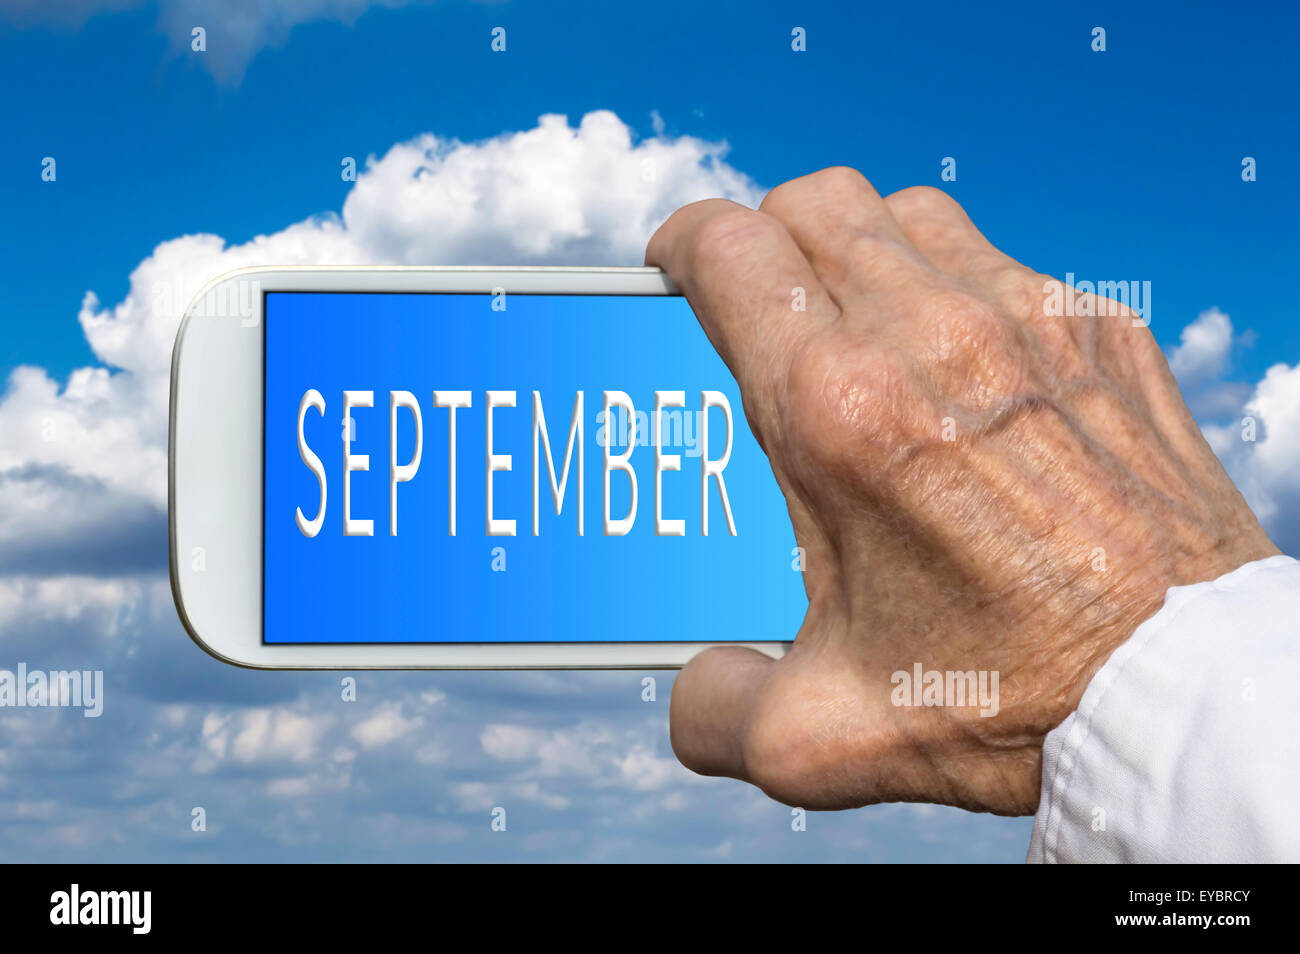 Smart phone in mano vecchia con il mese dell'anno - Settembre sullo schermo. Messa a fuoco selettiva. Foto Stock